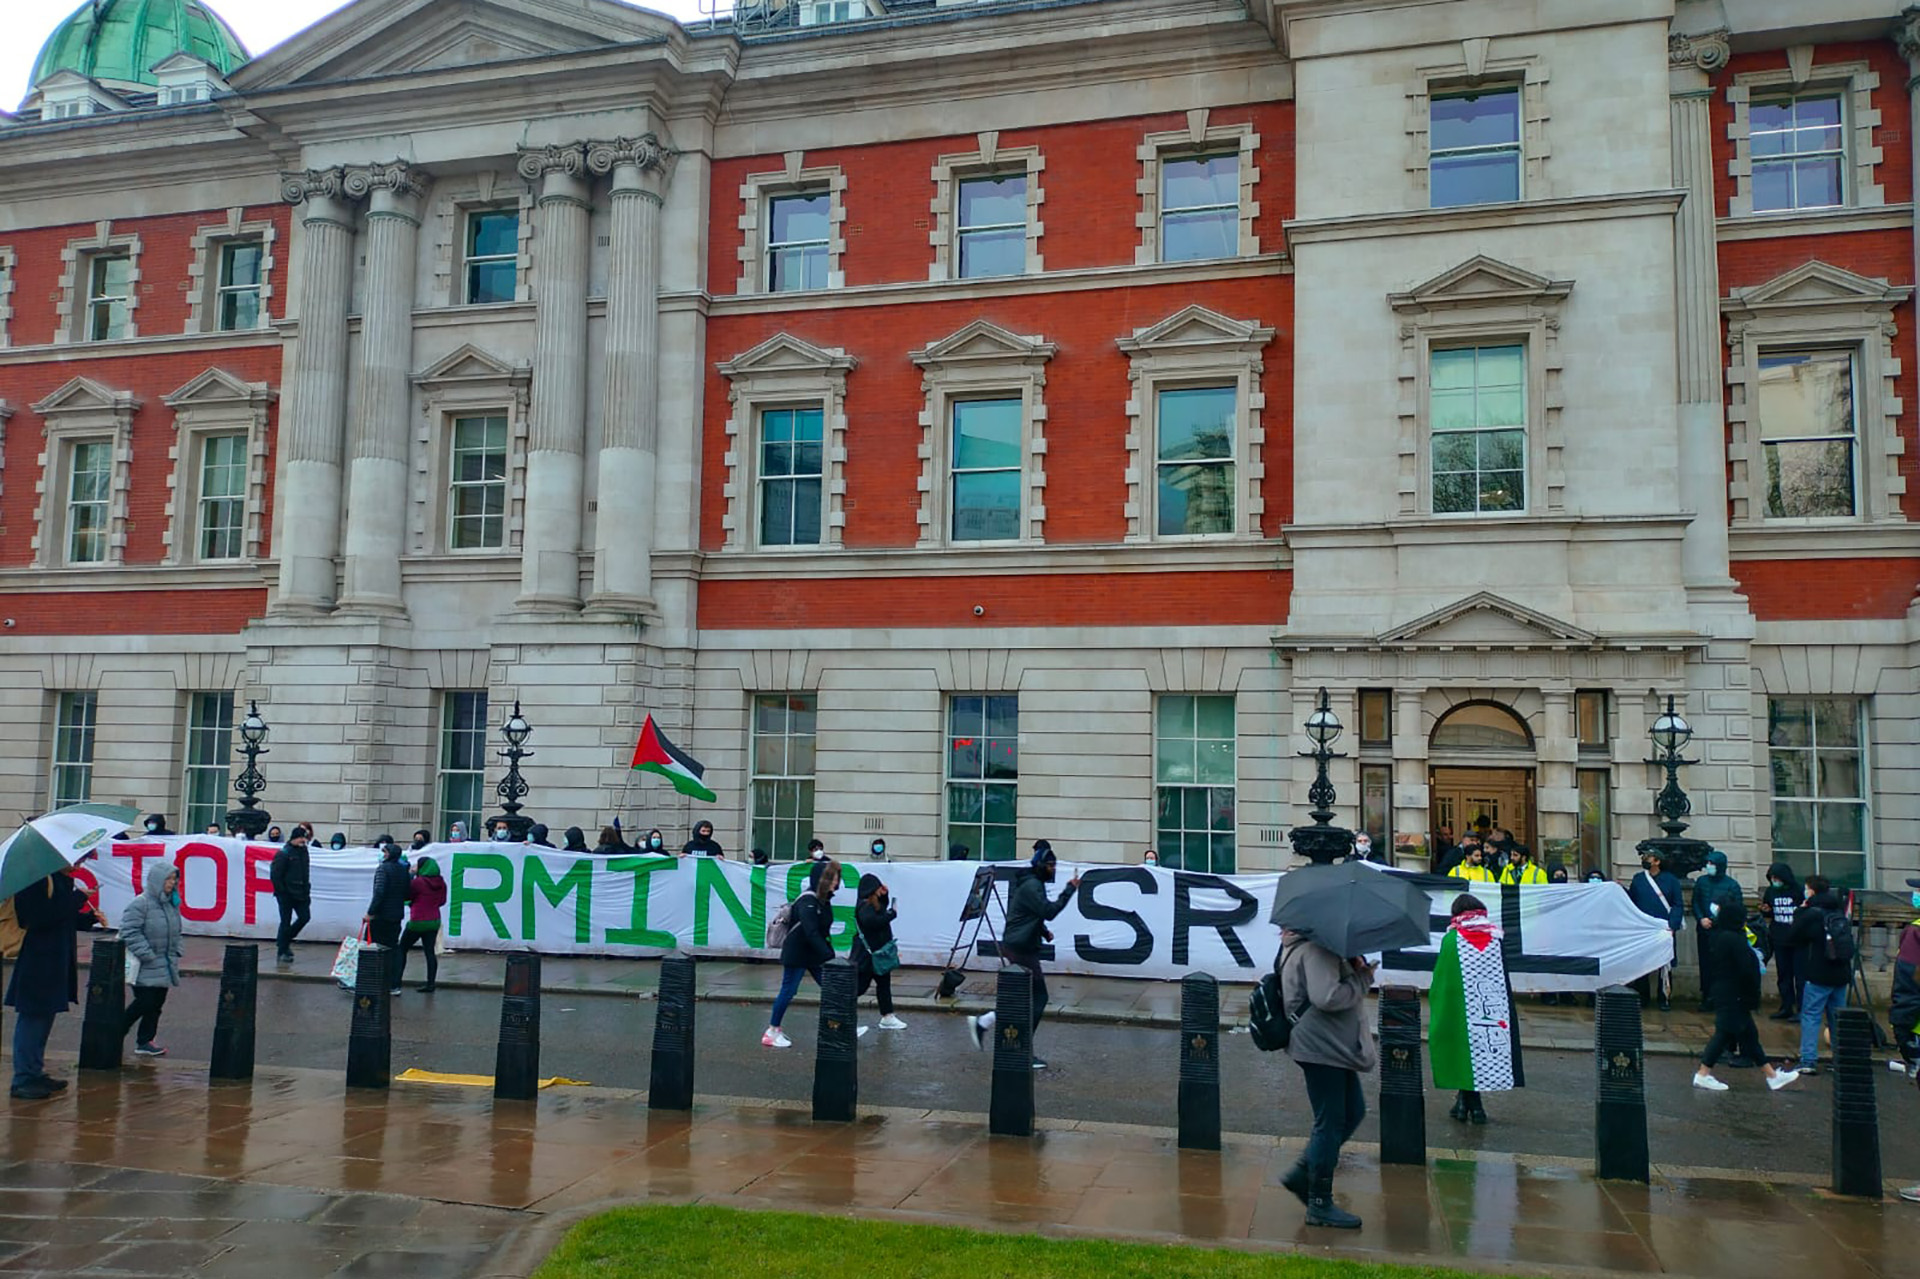 نشطاء يحاصرون وزارة الأعمال البريطانية احتجاجًا على تسليح إسرائيل | سياسة – البوكس نيوز